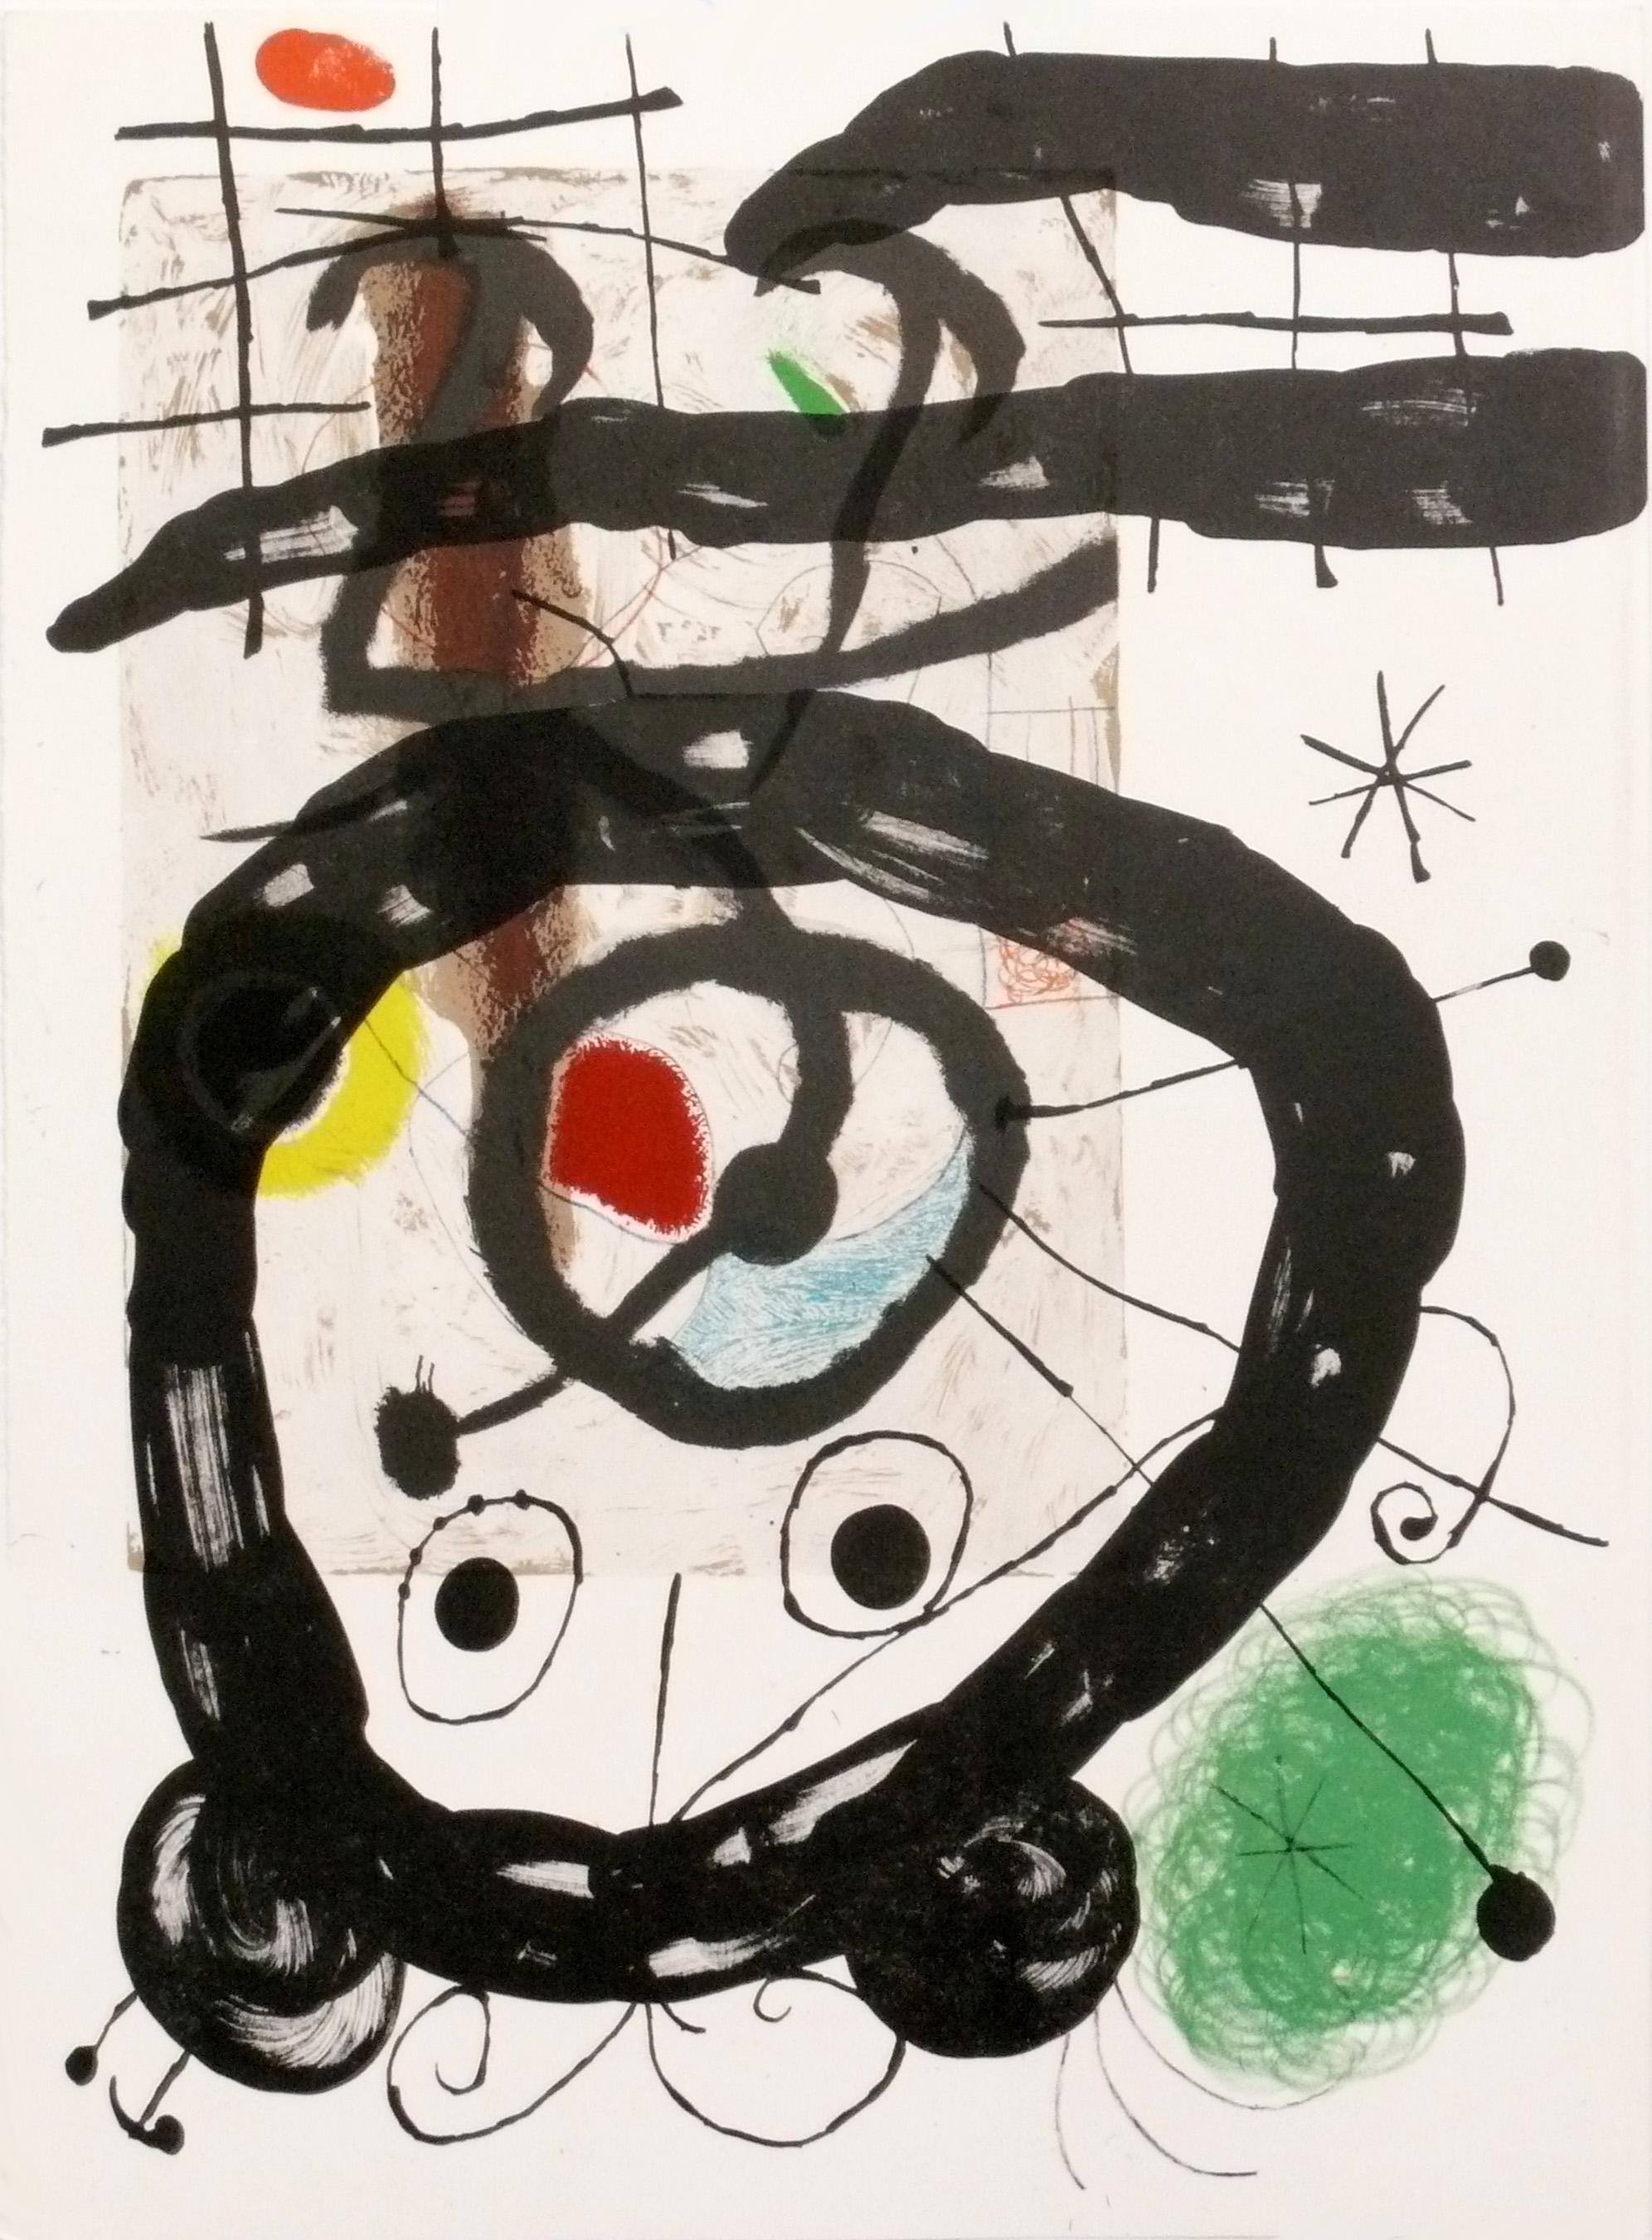 Sélection de lithographies en couleur de Joan Miro, françaises, vers les années 1960. Elles sont extraites de l'édition limitée 